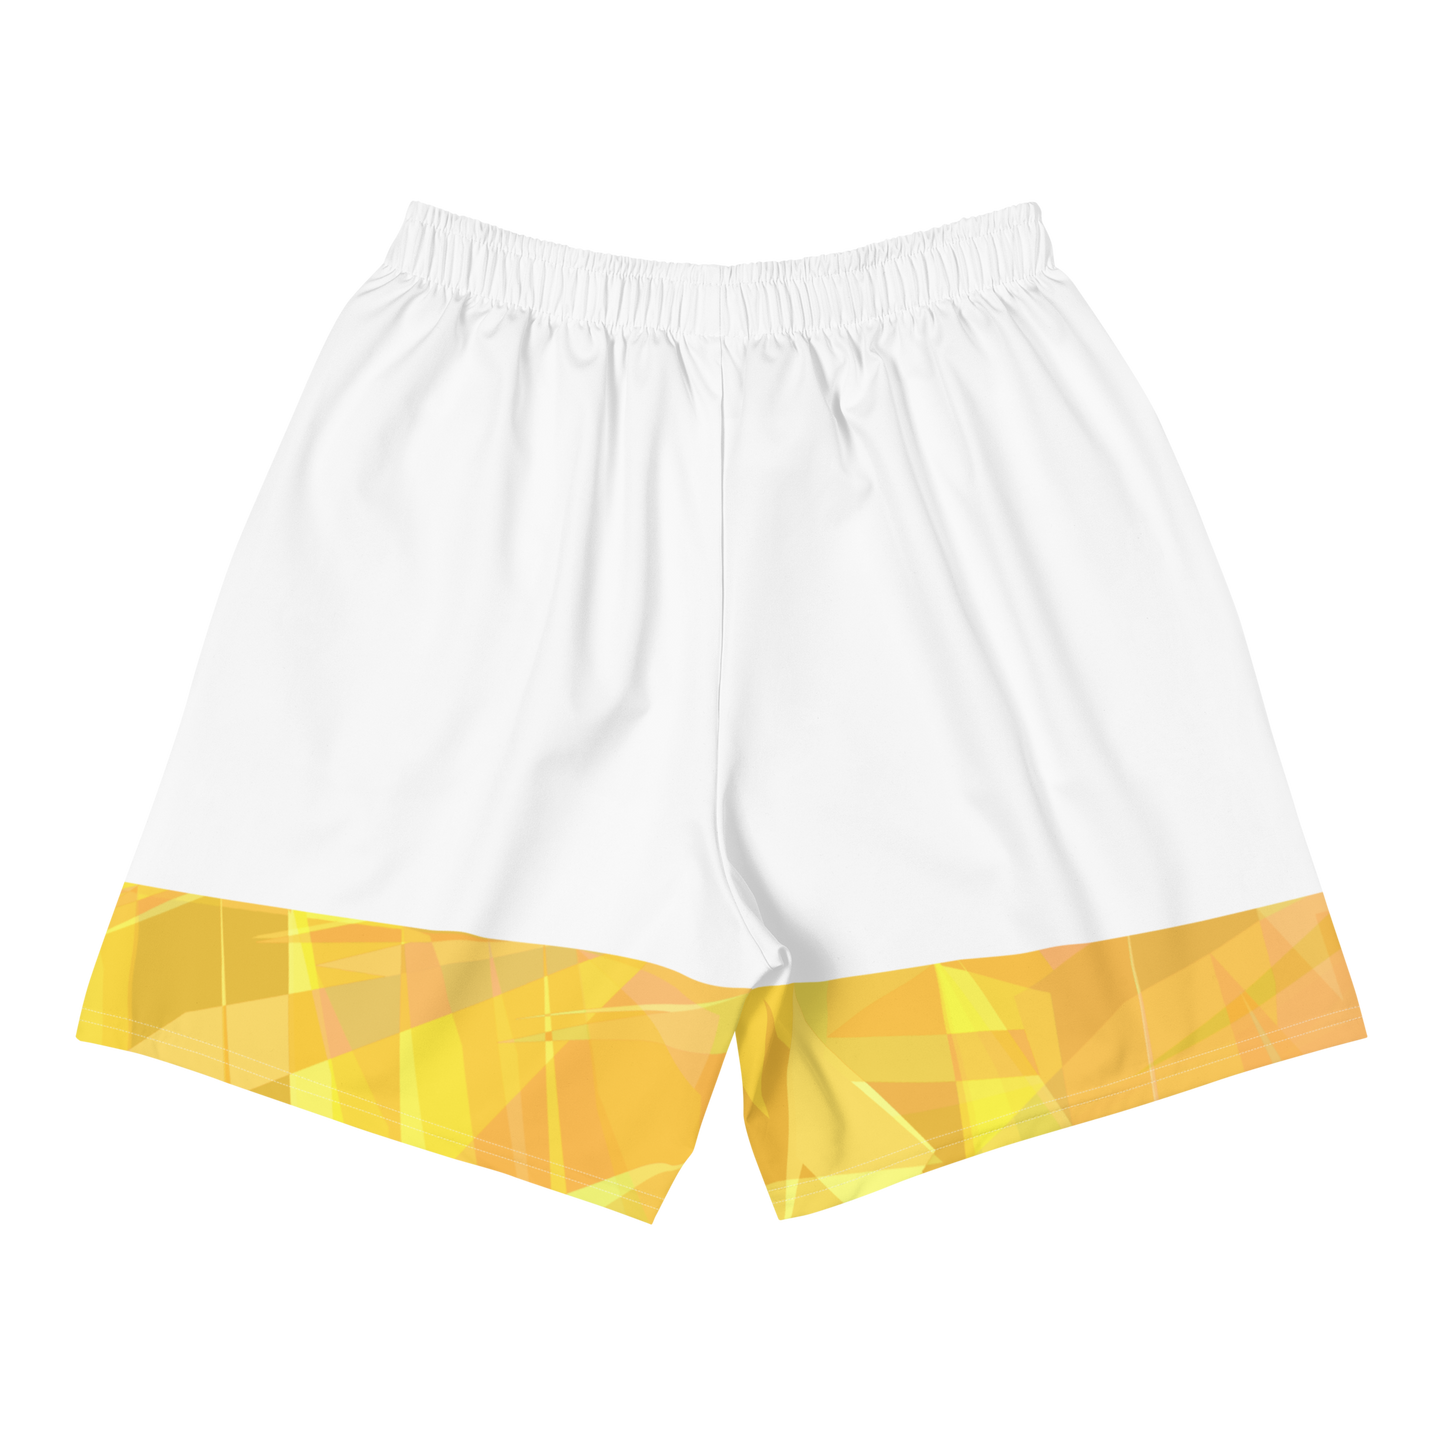 Sqdltd Starburst WYW Men's Athletic Shorts